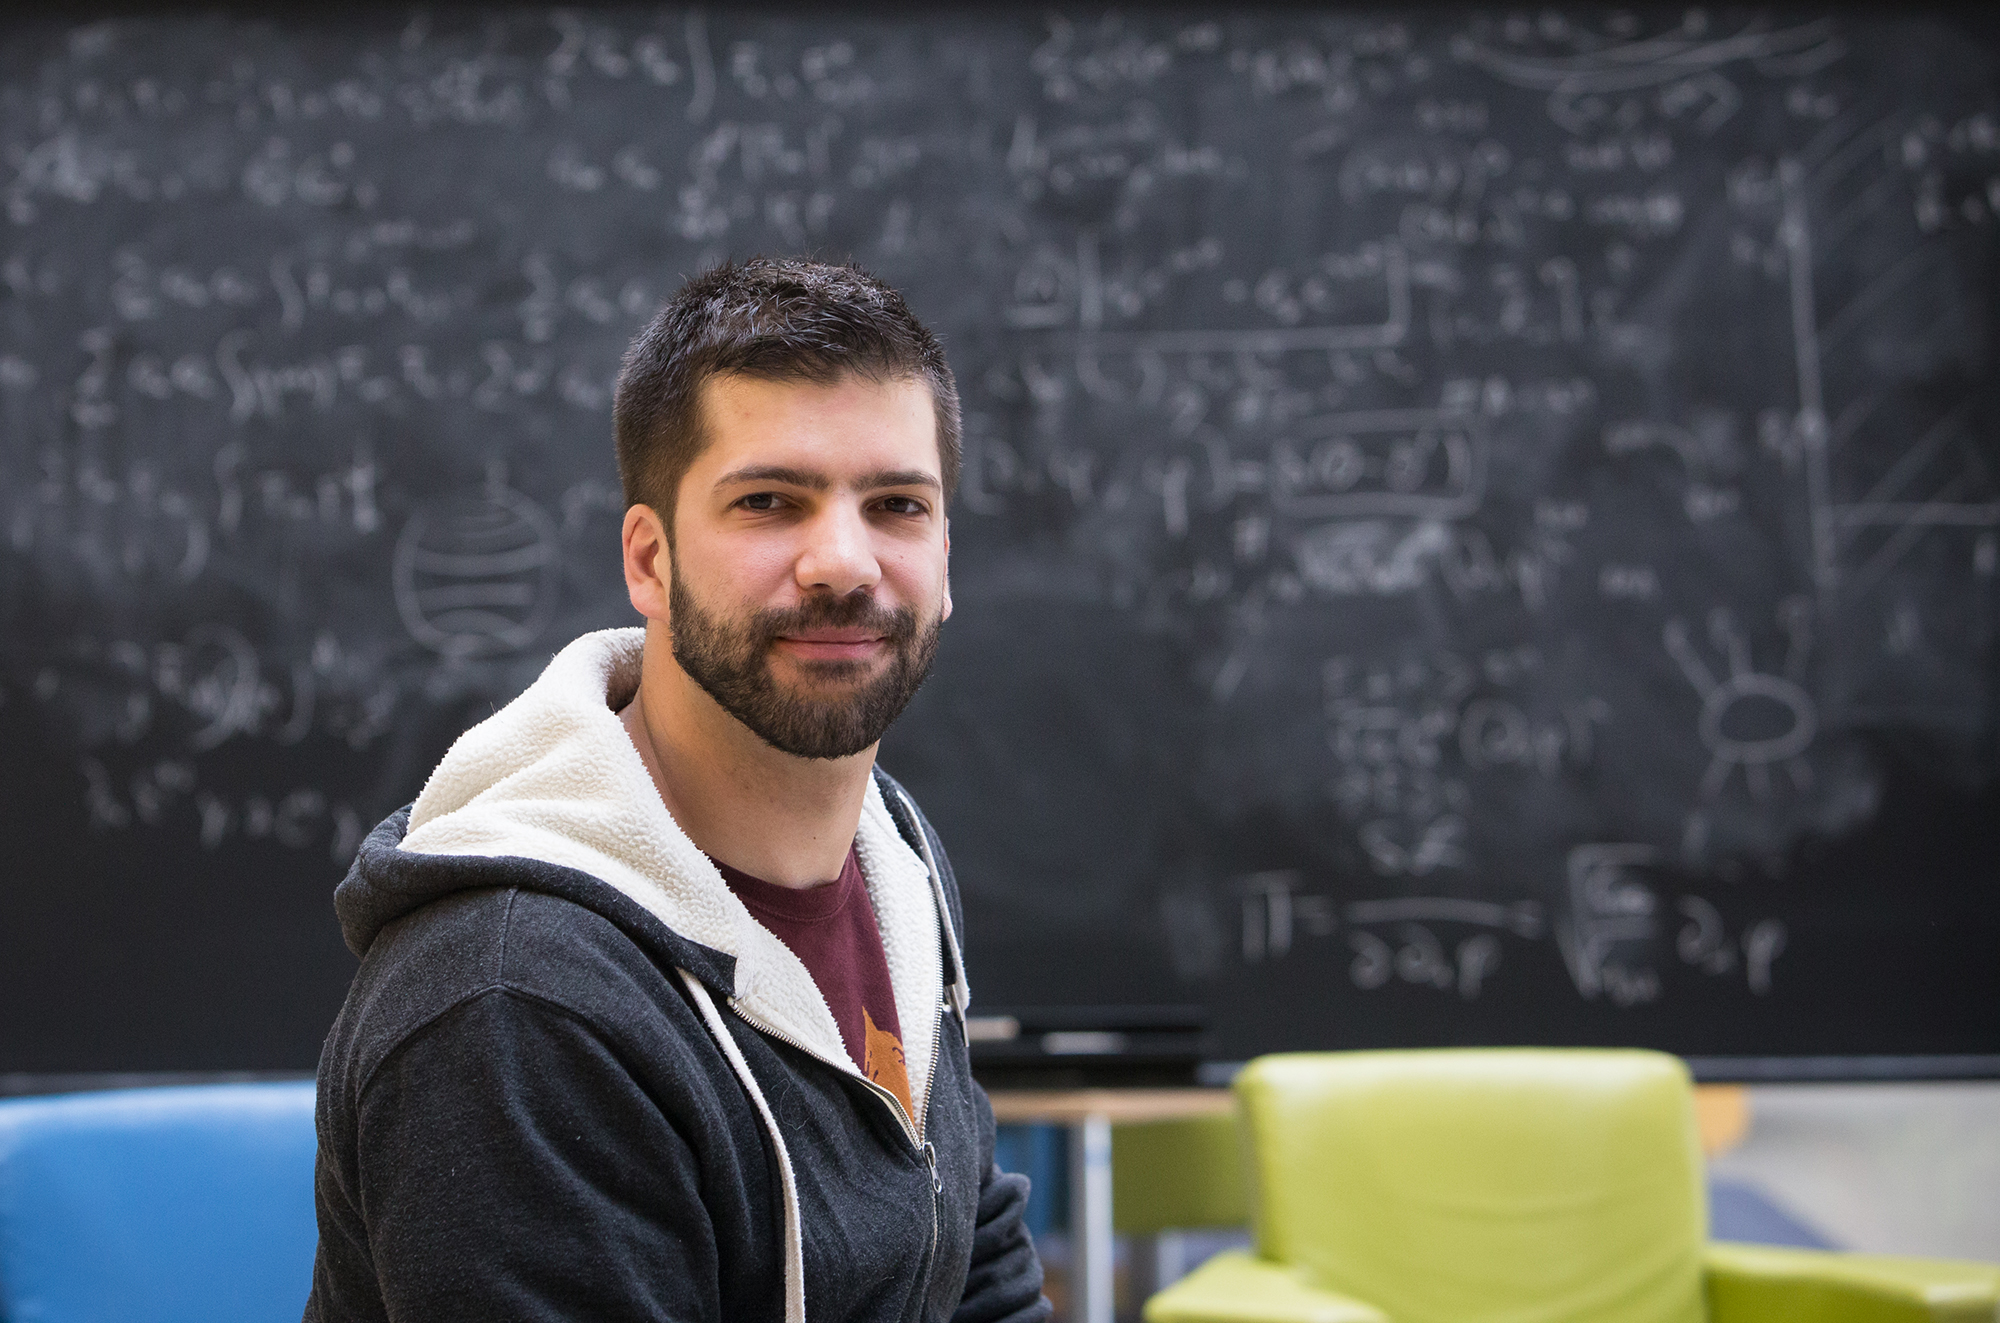 Giacomo Torlai se tient devant un tableau noir flou rempli d'équations dans l'atrium de l'IP